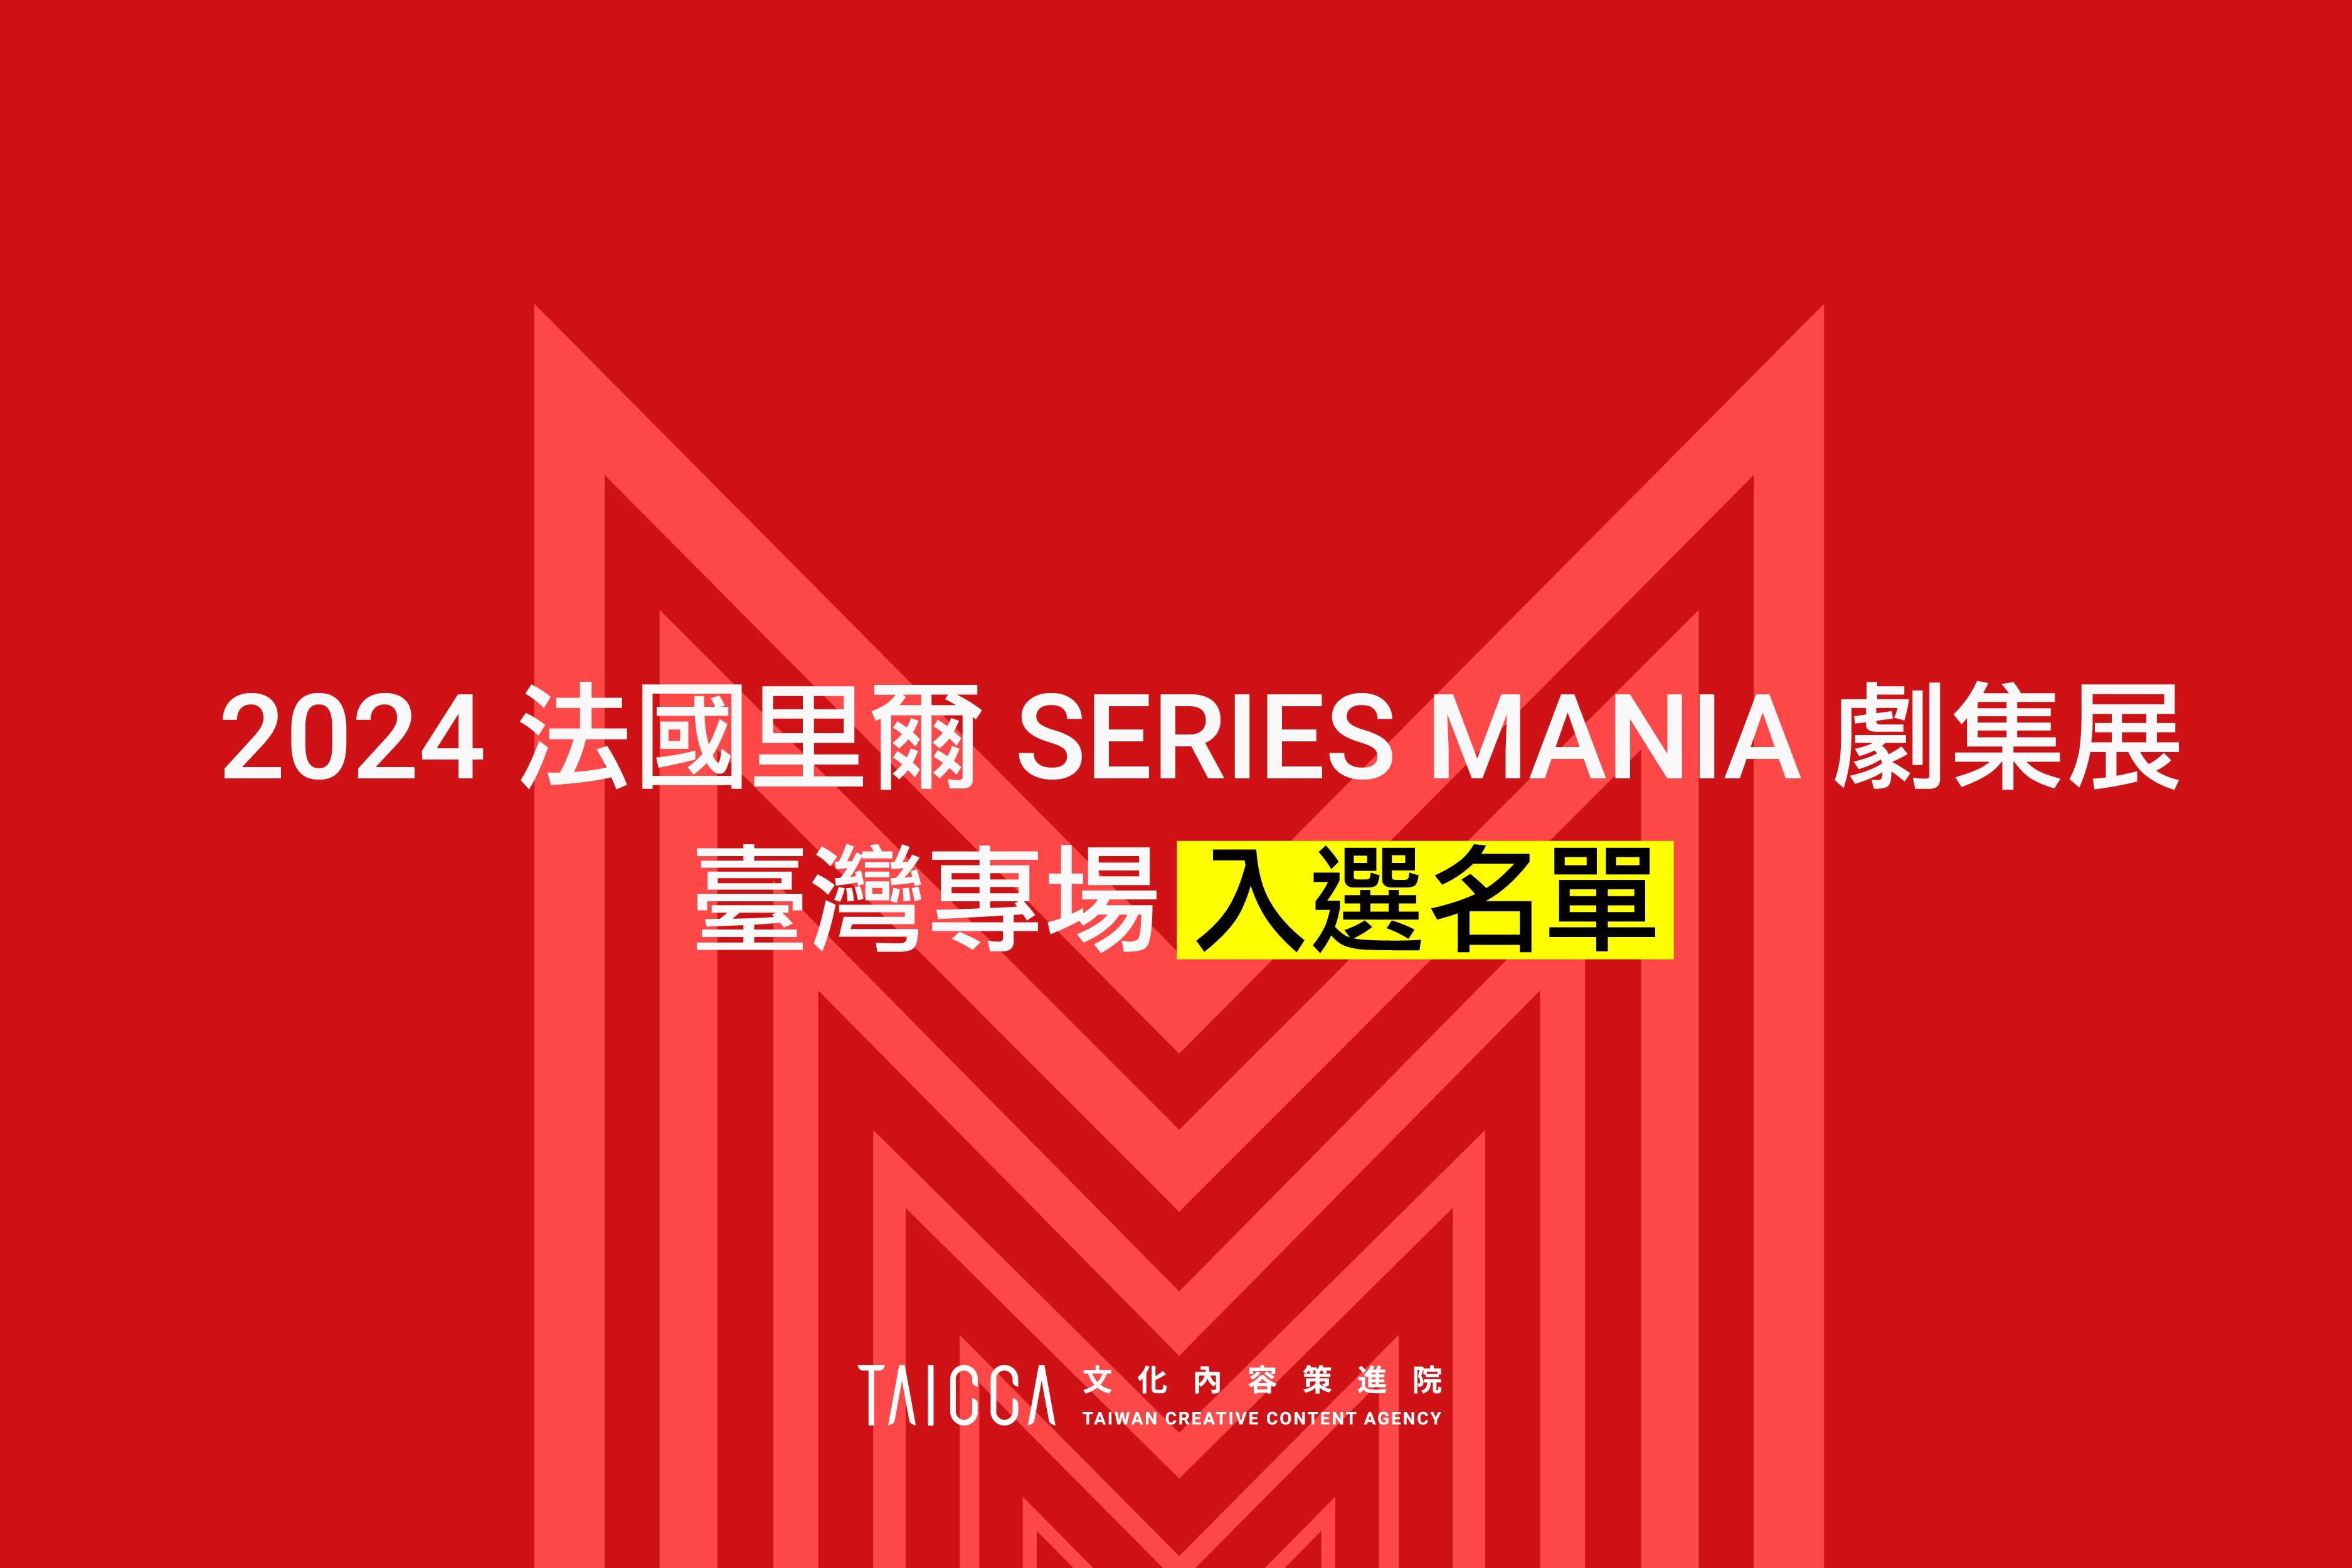 2024 法國里爾 SERIES MANIA  劇集展—臺灣專場企劃案 入選名單